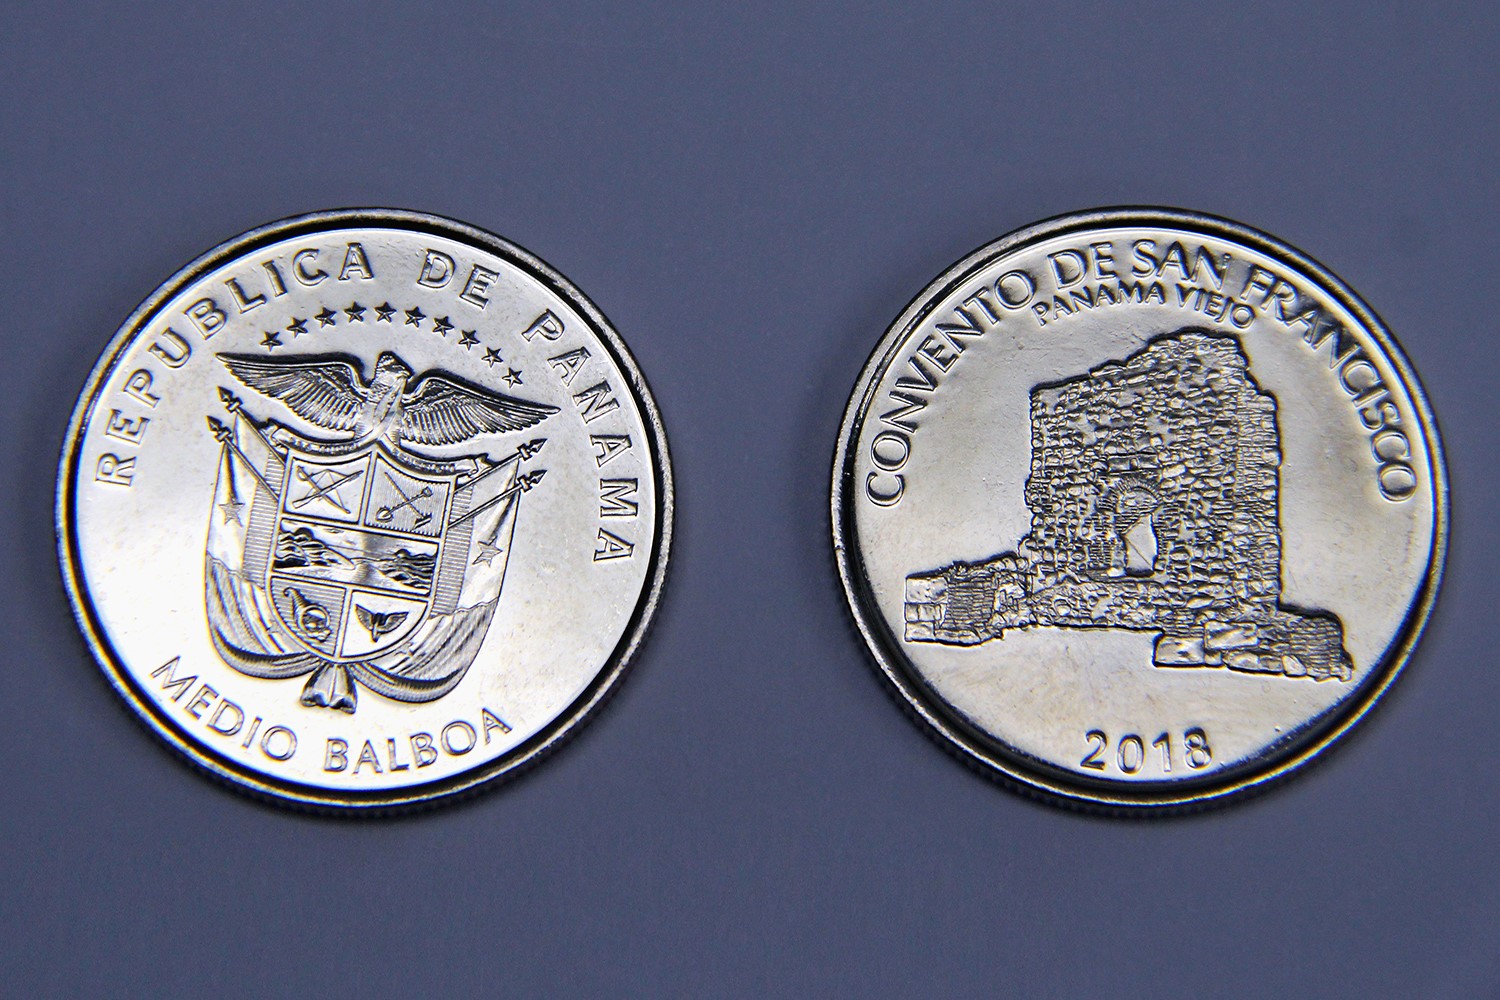 Circularán monedas alusivas a Panamá Viejo